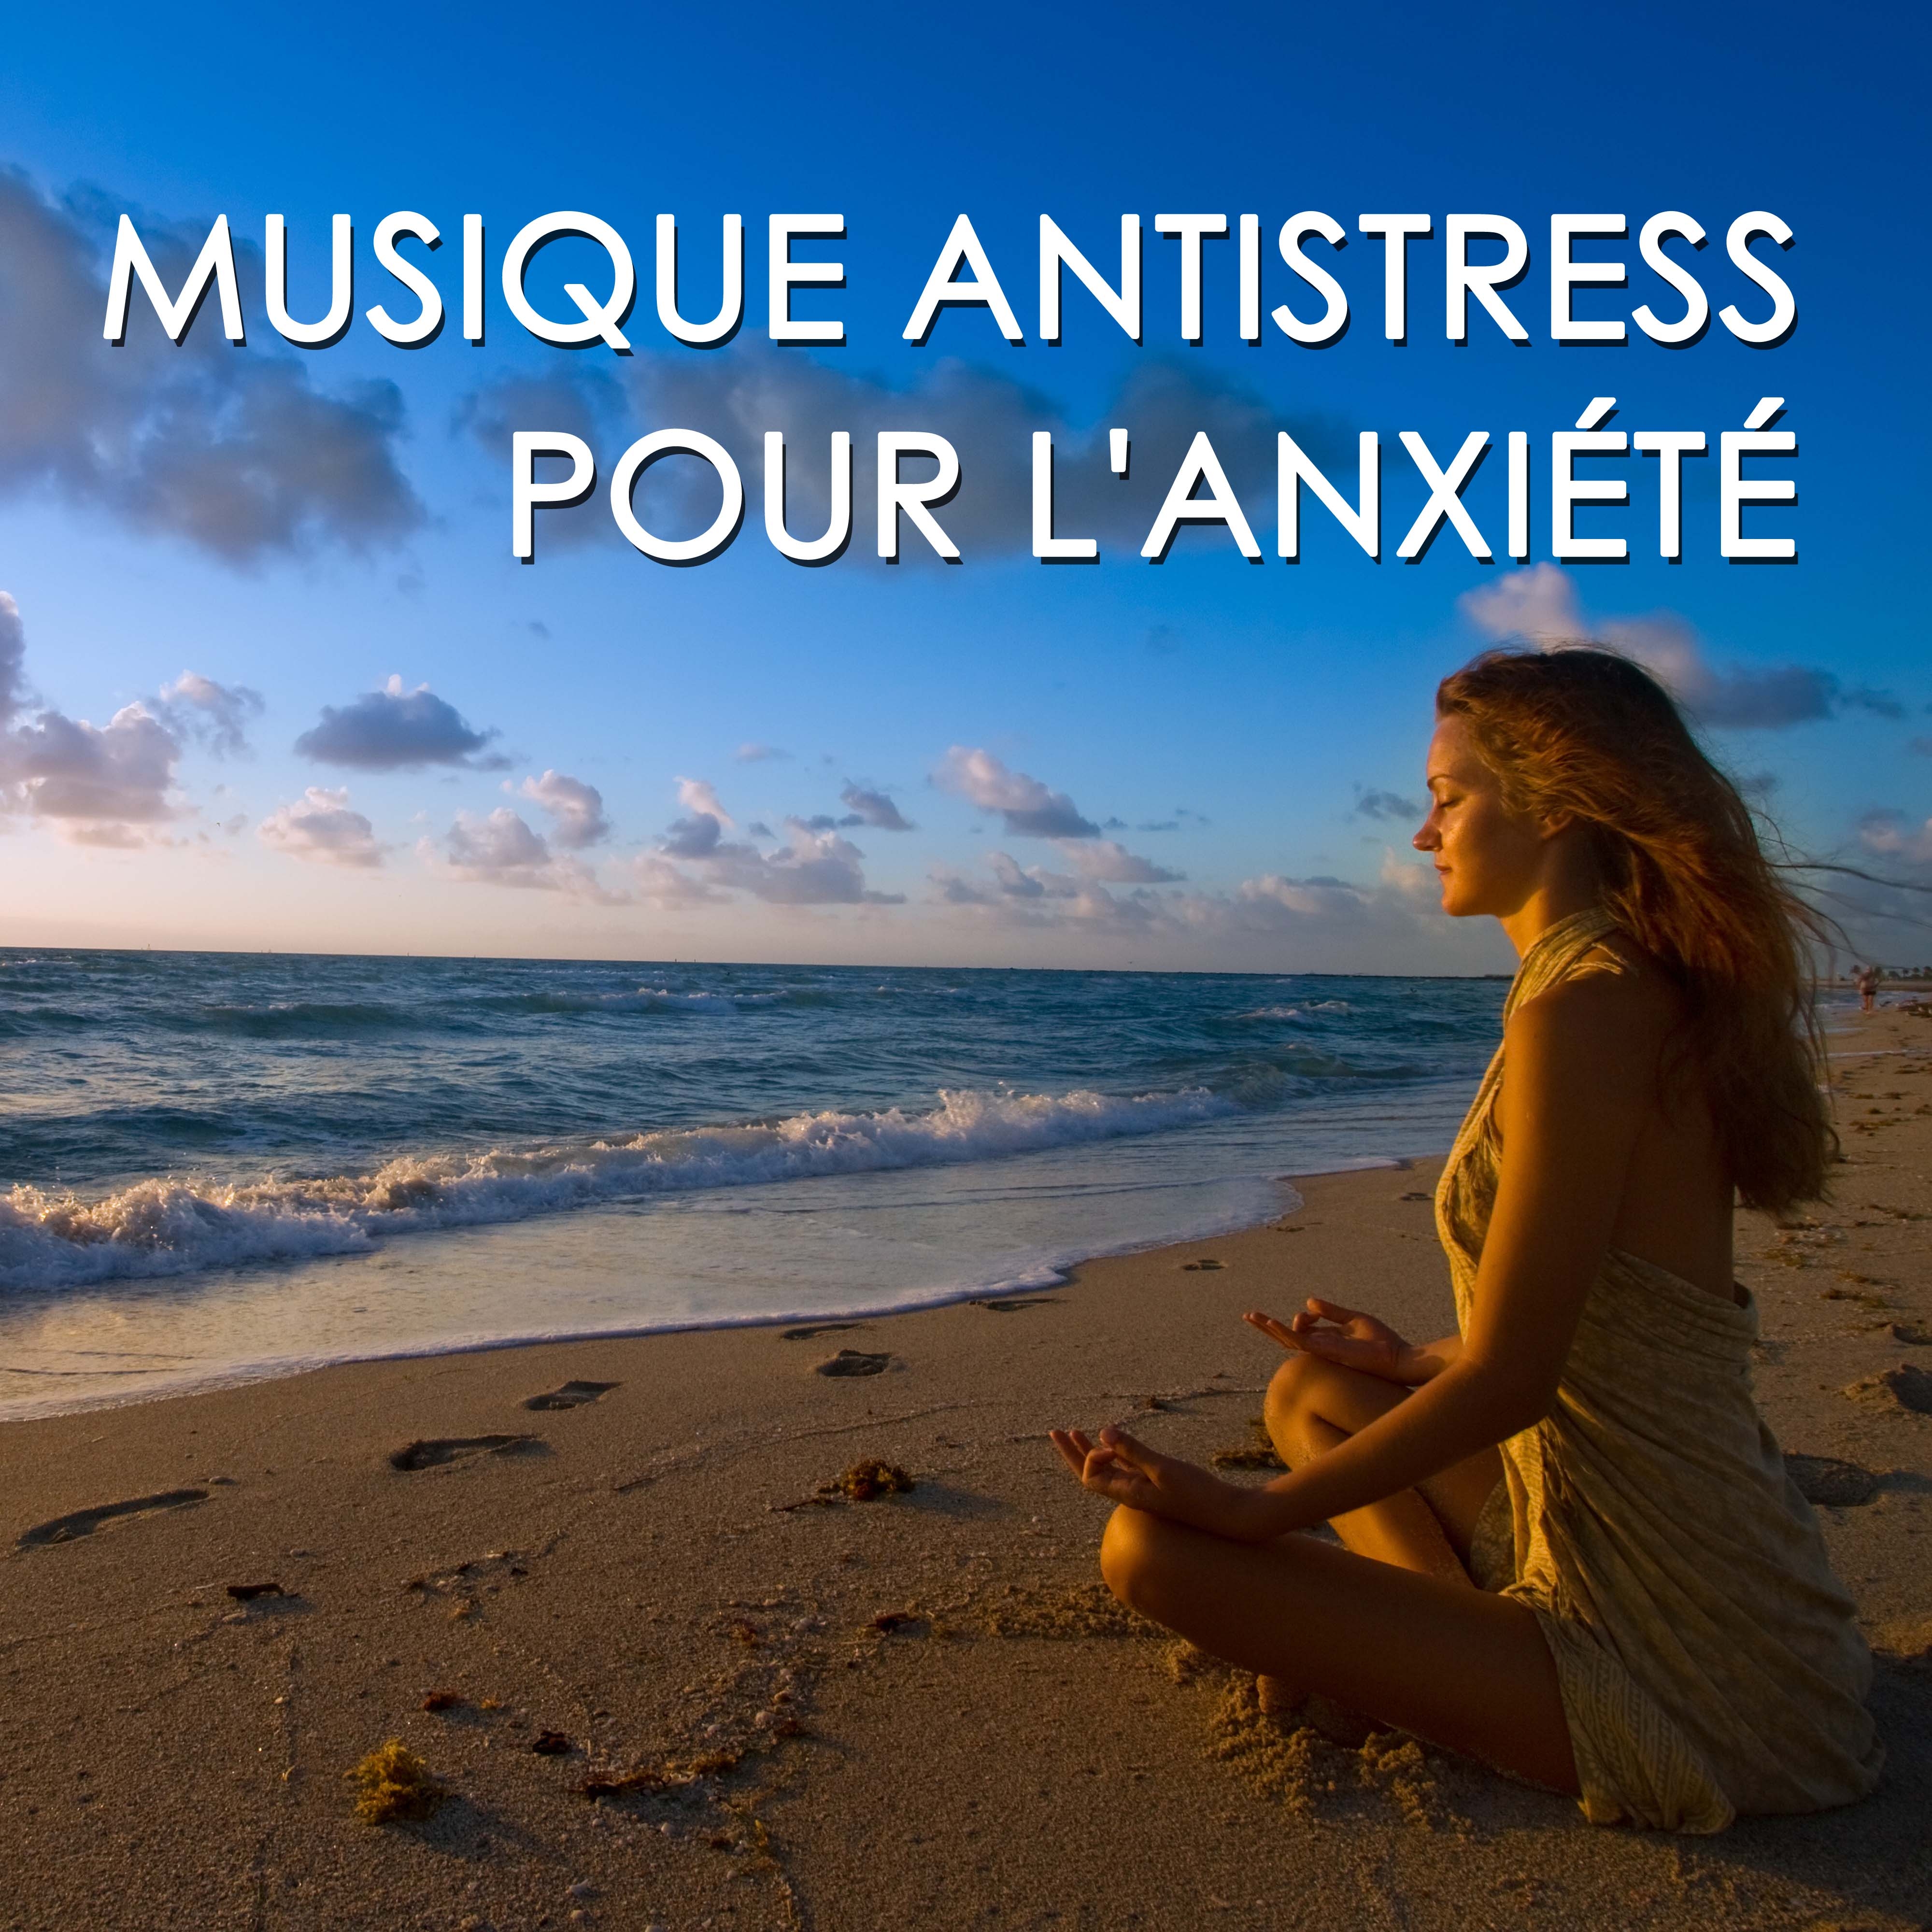 Musique Antistress pour l'Anxiété